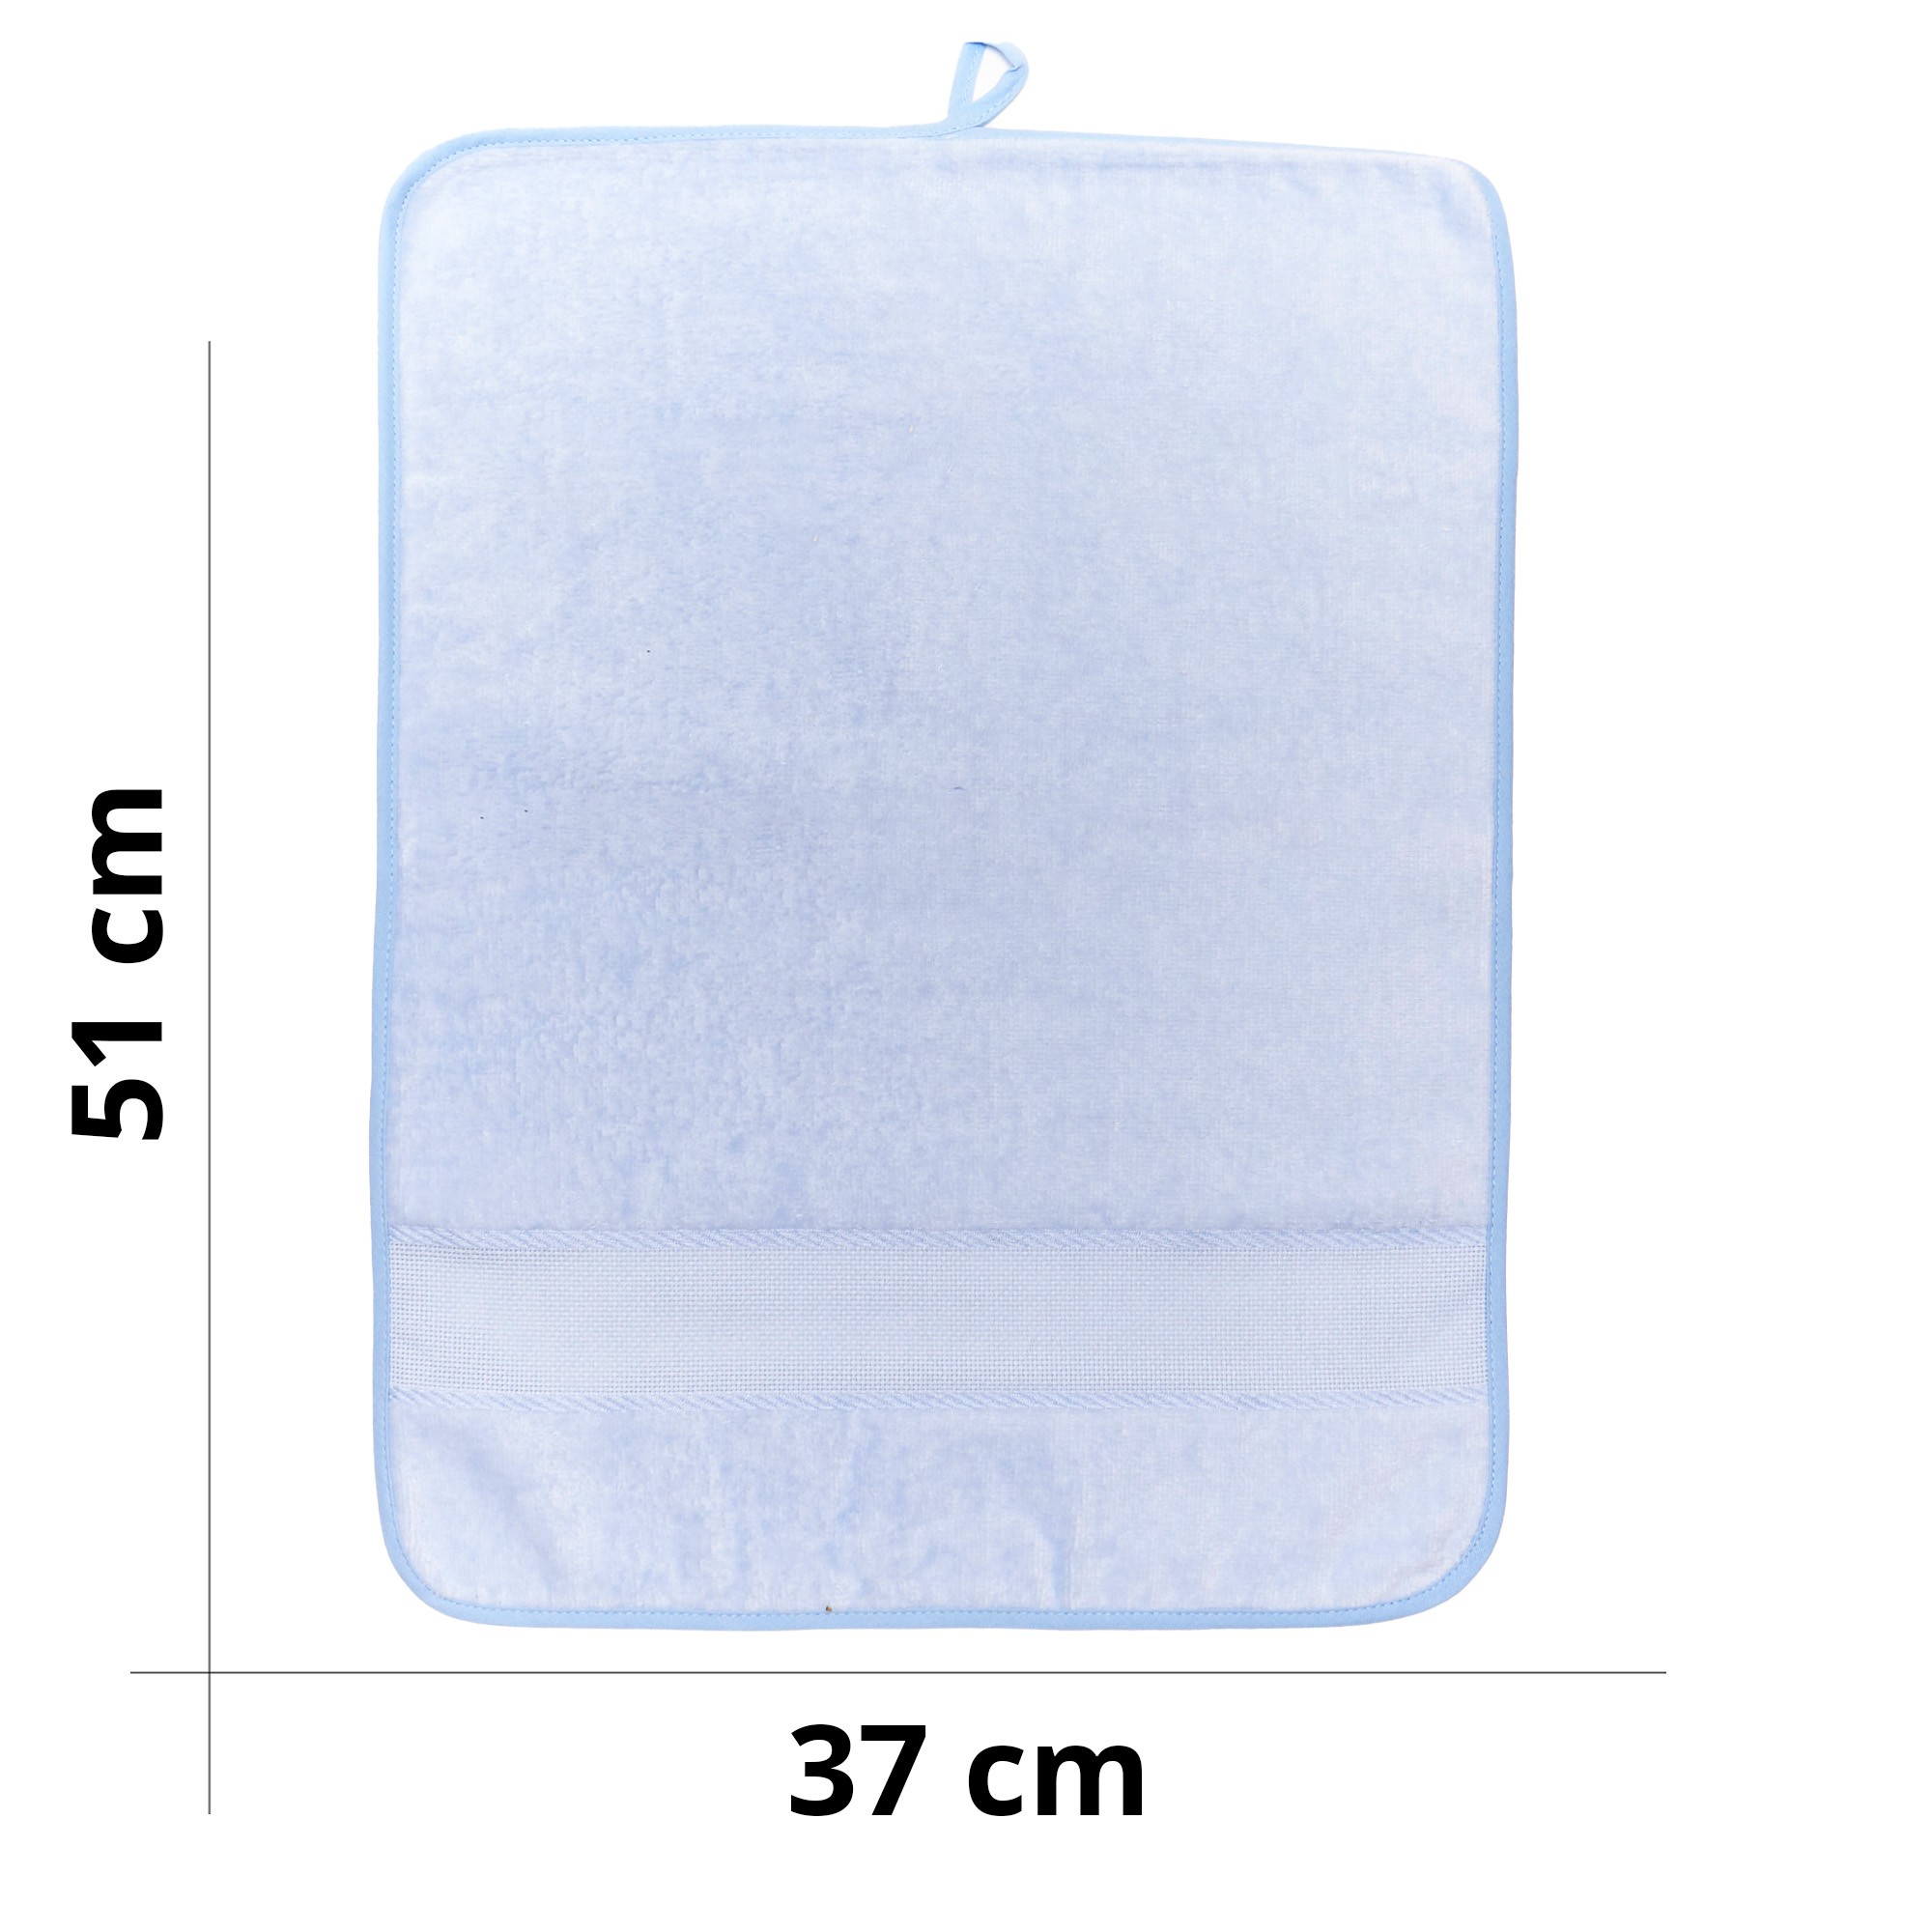 Asciugamano asilo personalizzato in ciniglia di cotone con inserto in tela aida